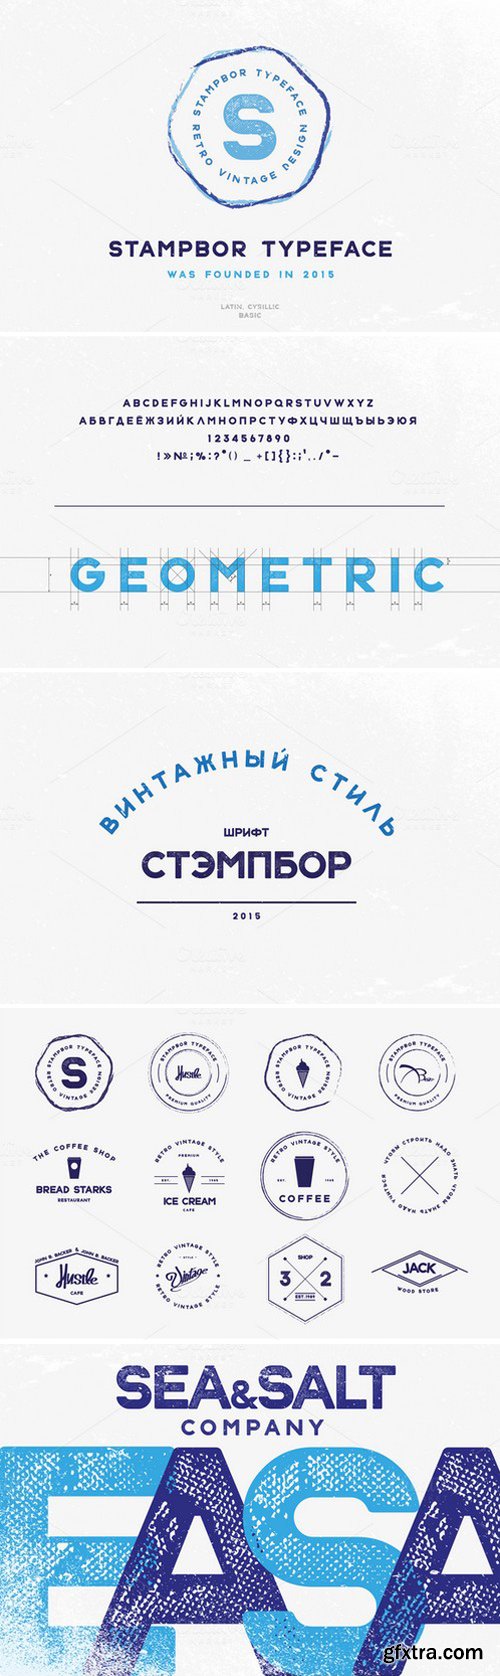 CM288230 - Stampbor Font & Badges